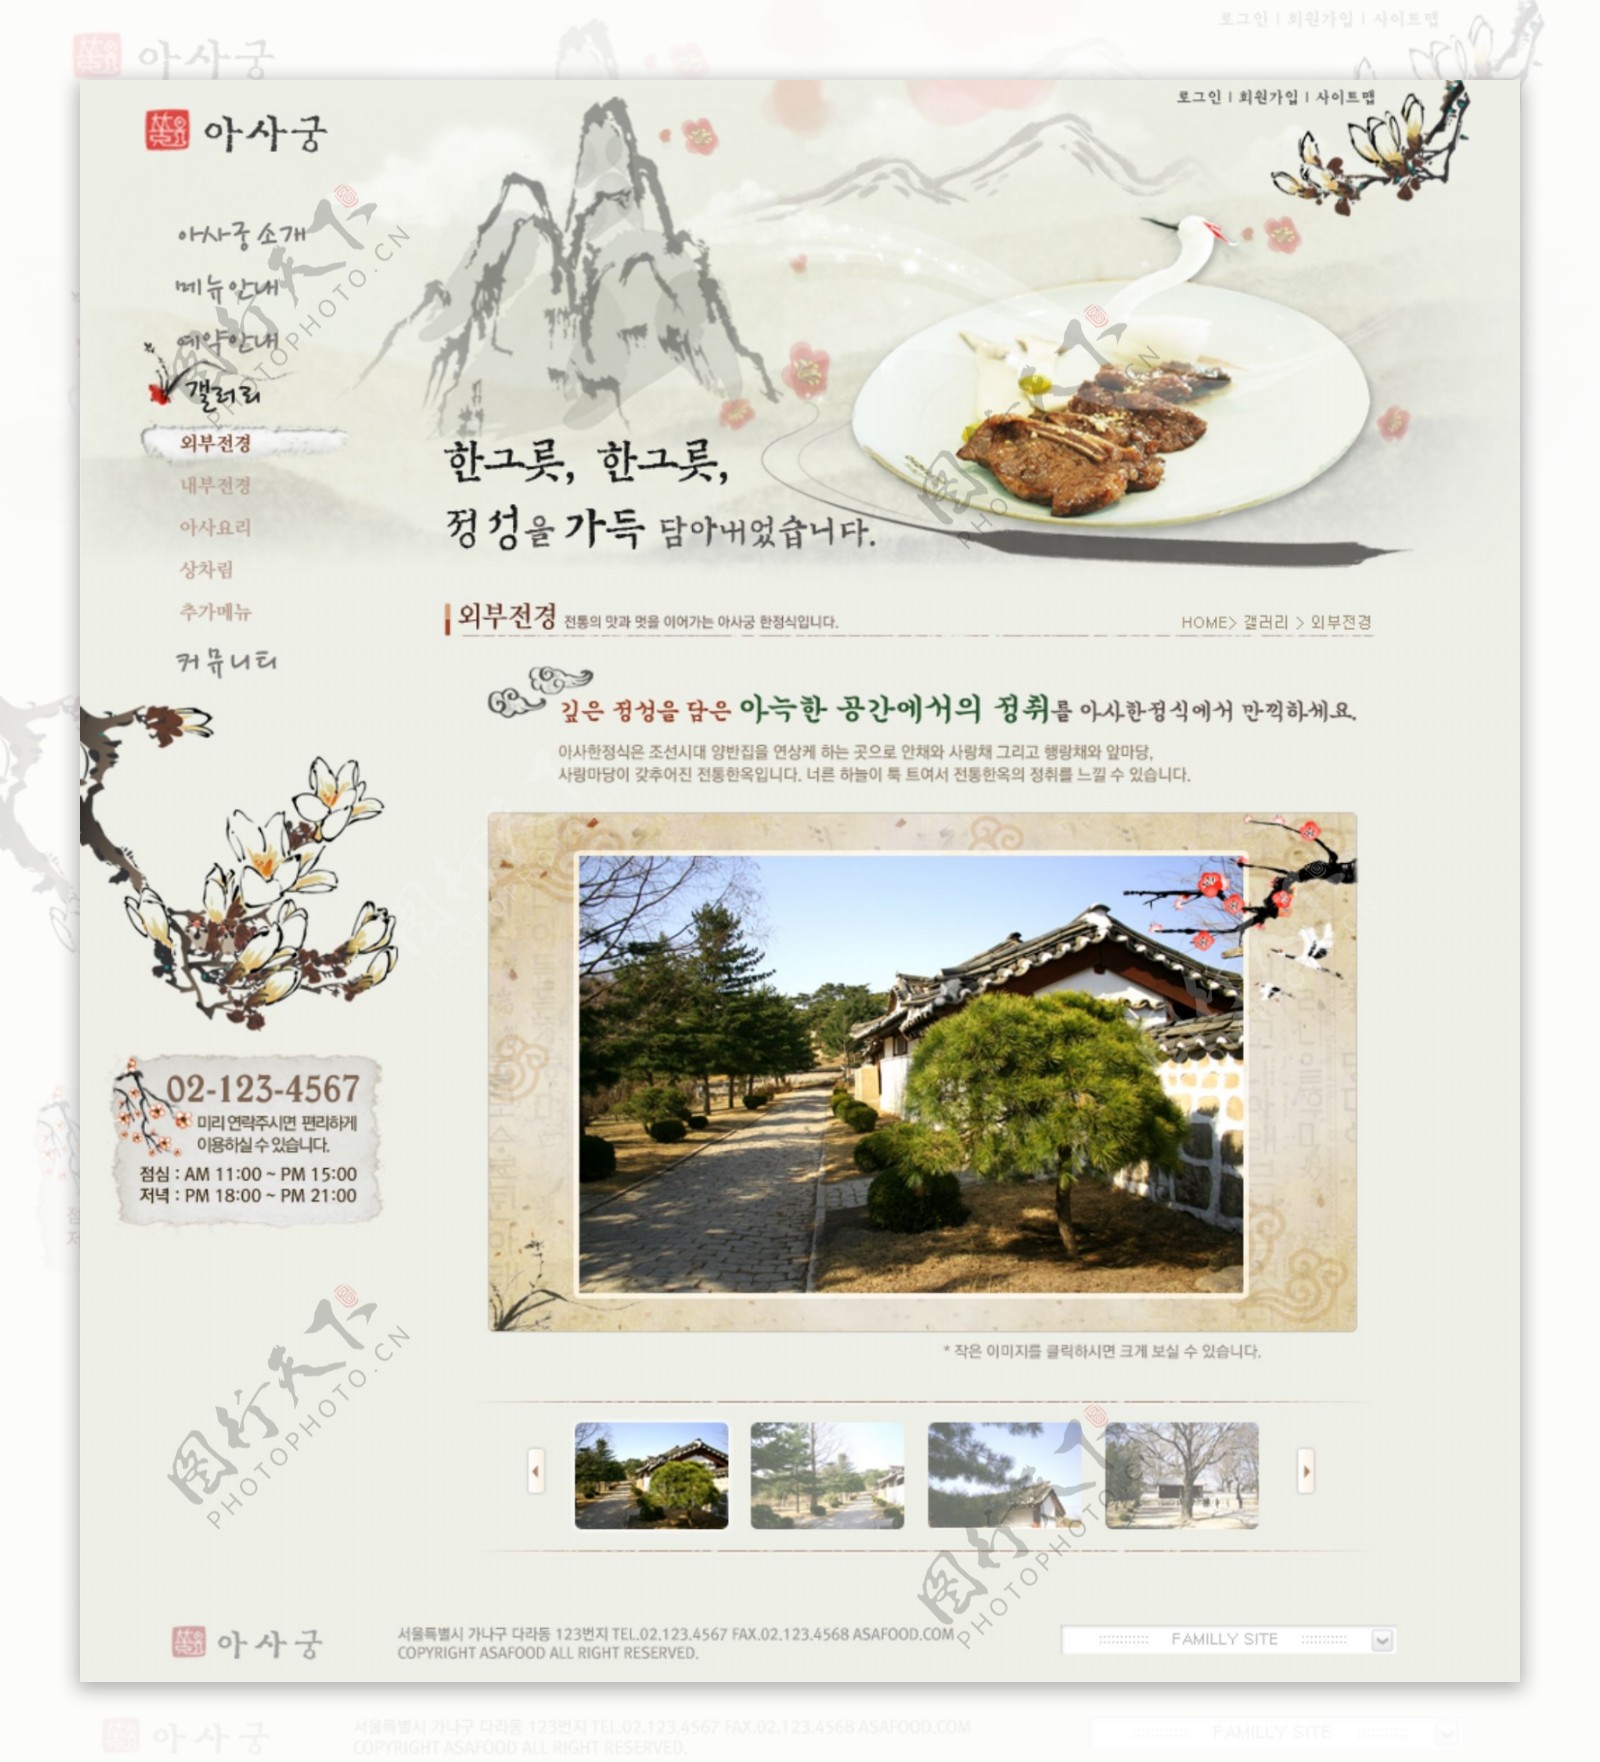 韩国食品网站